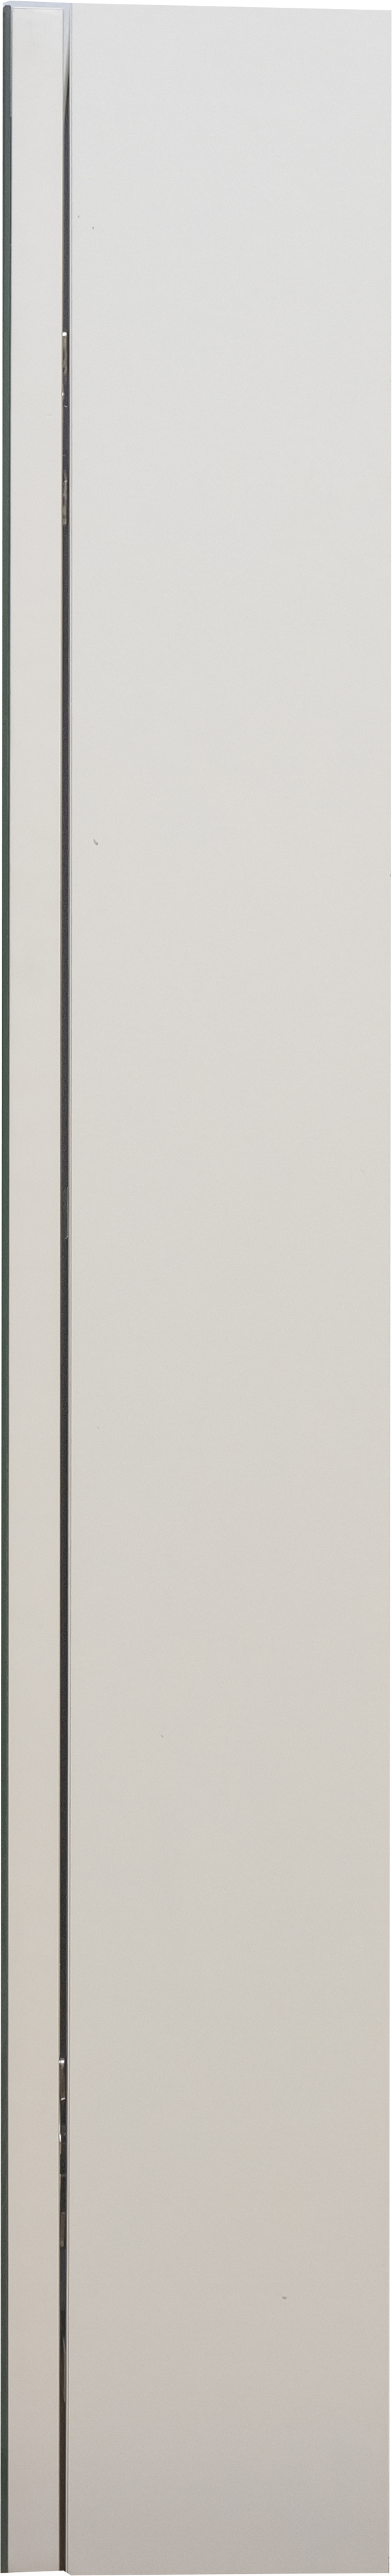 Зеркало-шкаф DIWO Ростов 70 см, прямоугольное, навесное, белое. российское СО-Ро04070-011 - 5